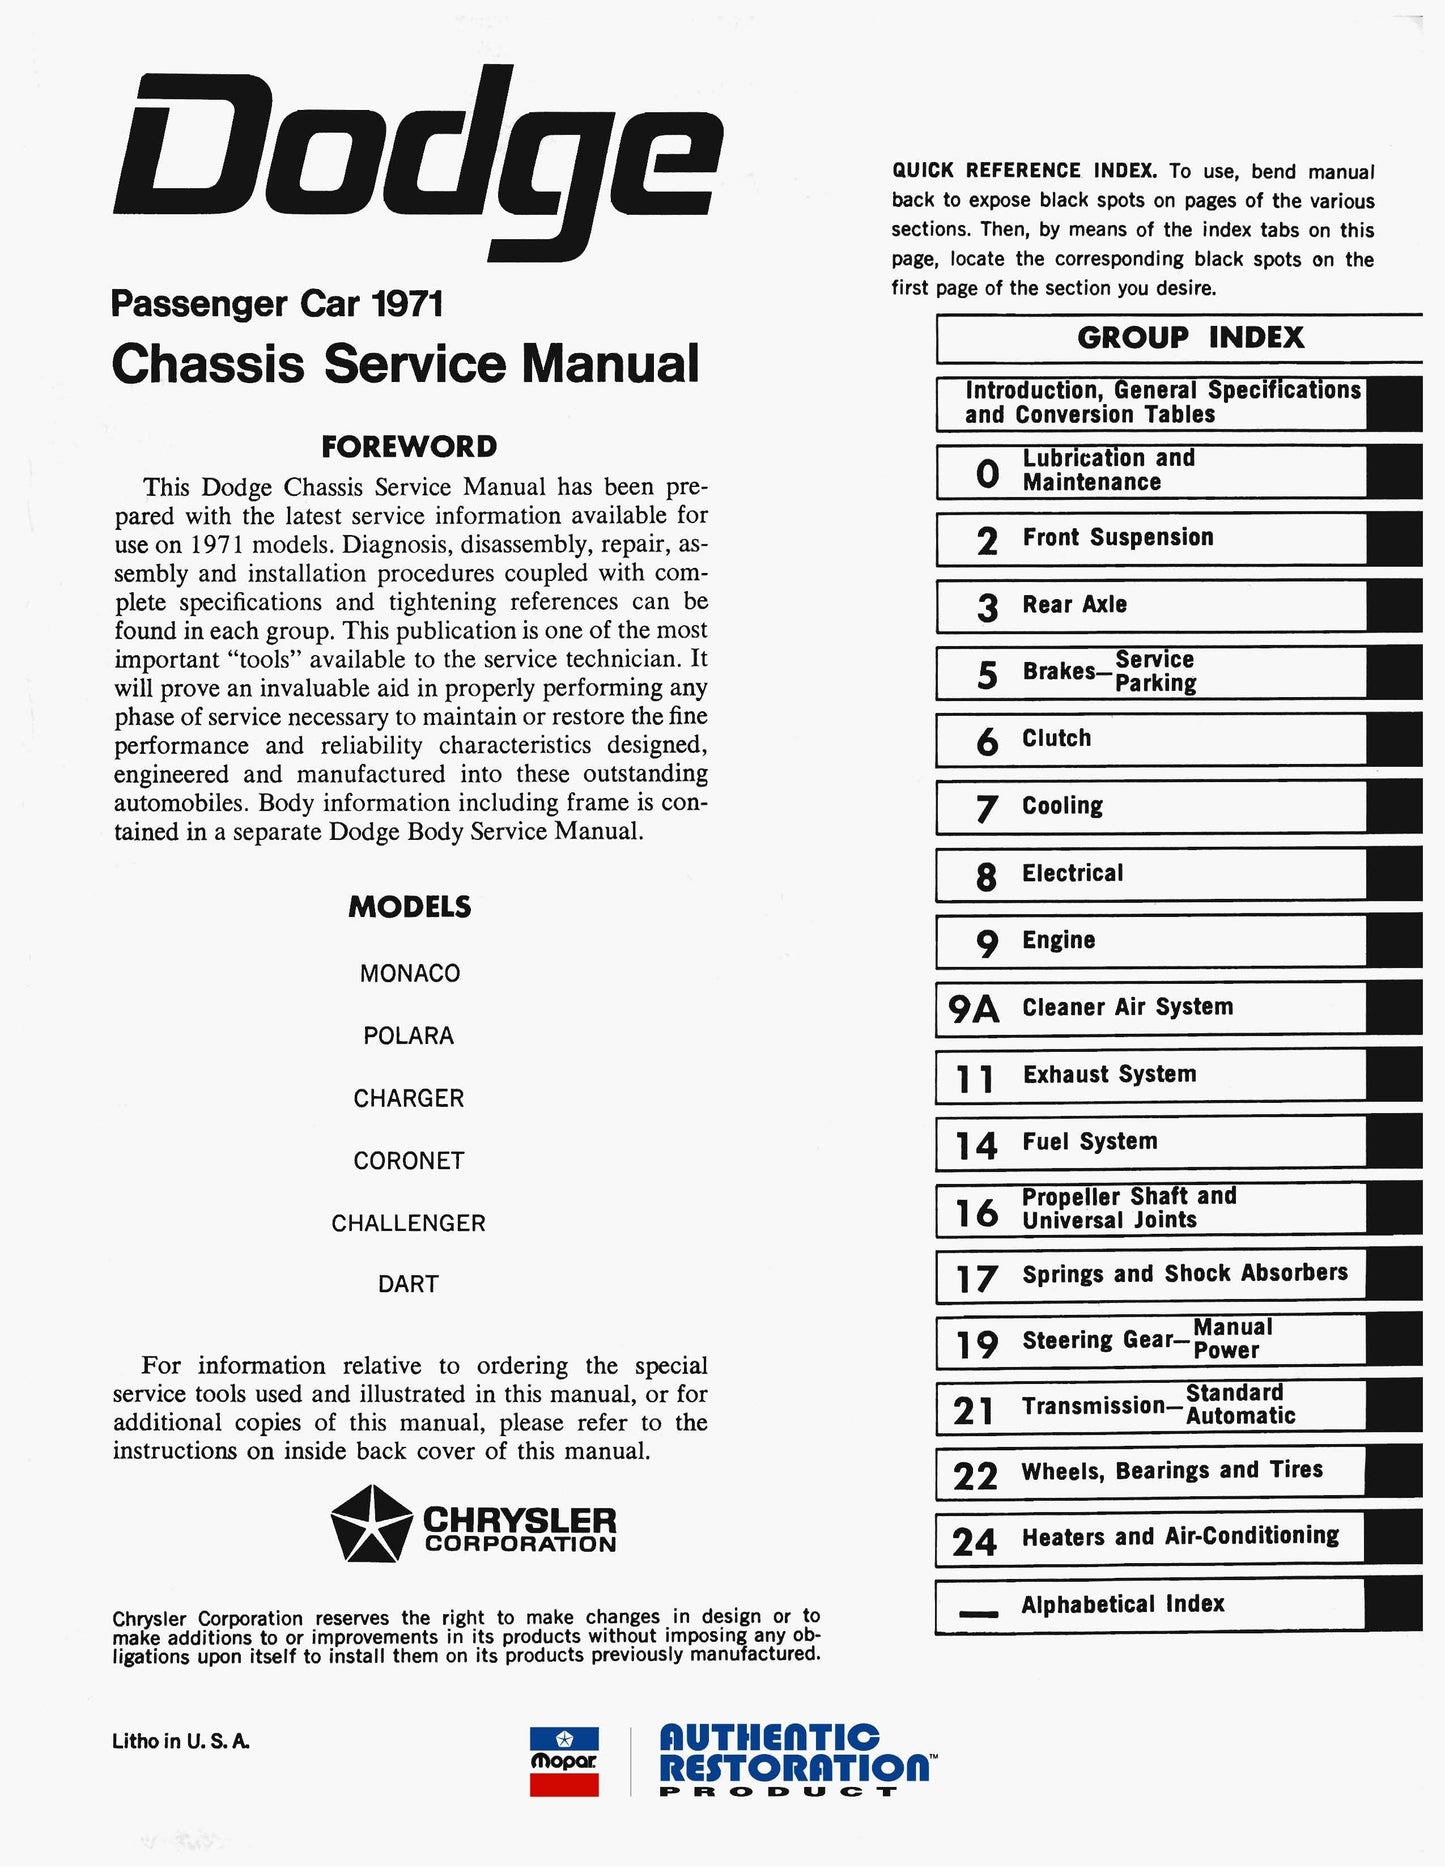 1971 Dodge Car Service Manuals - All Models